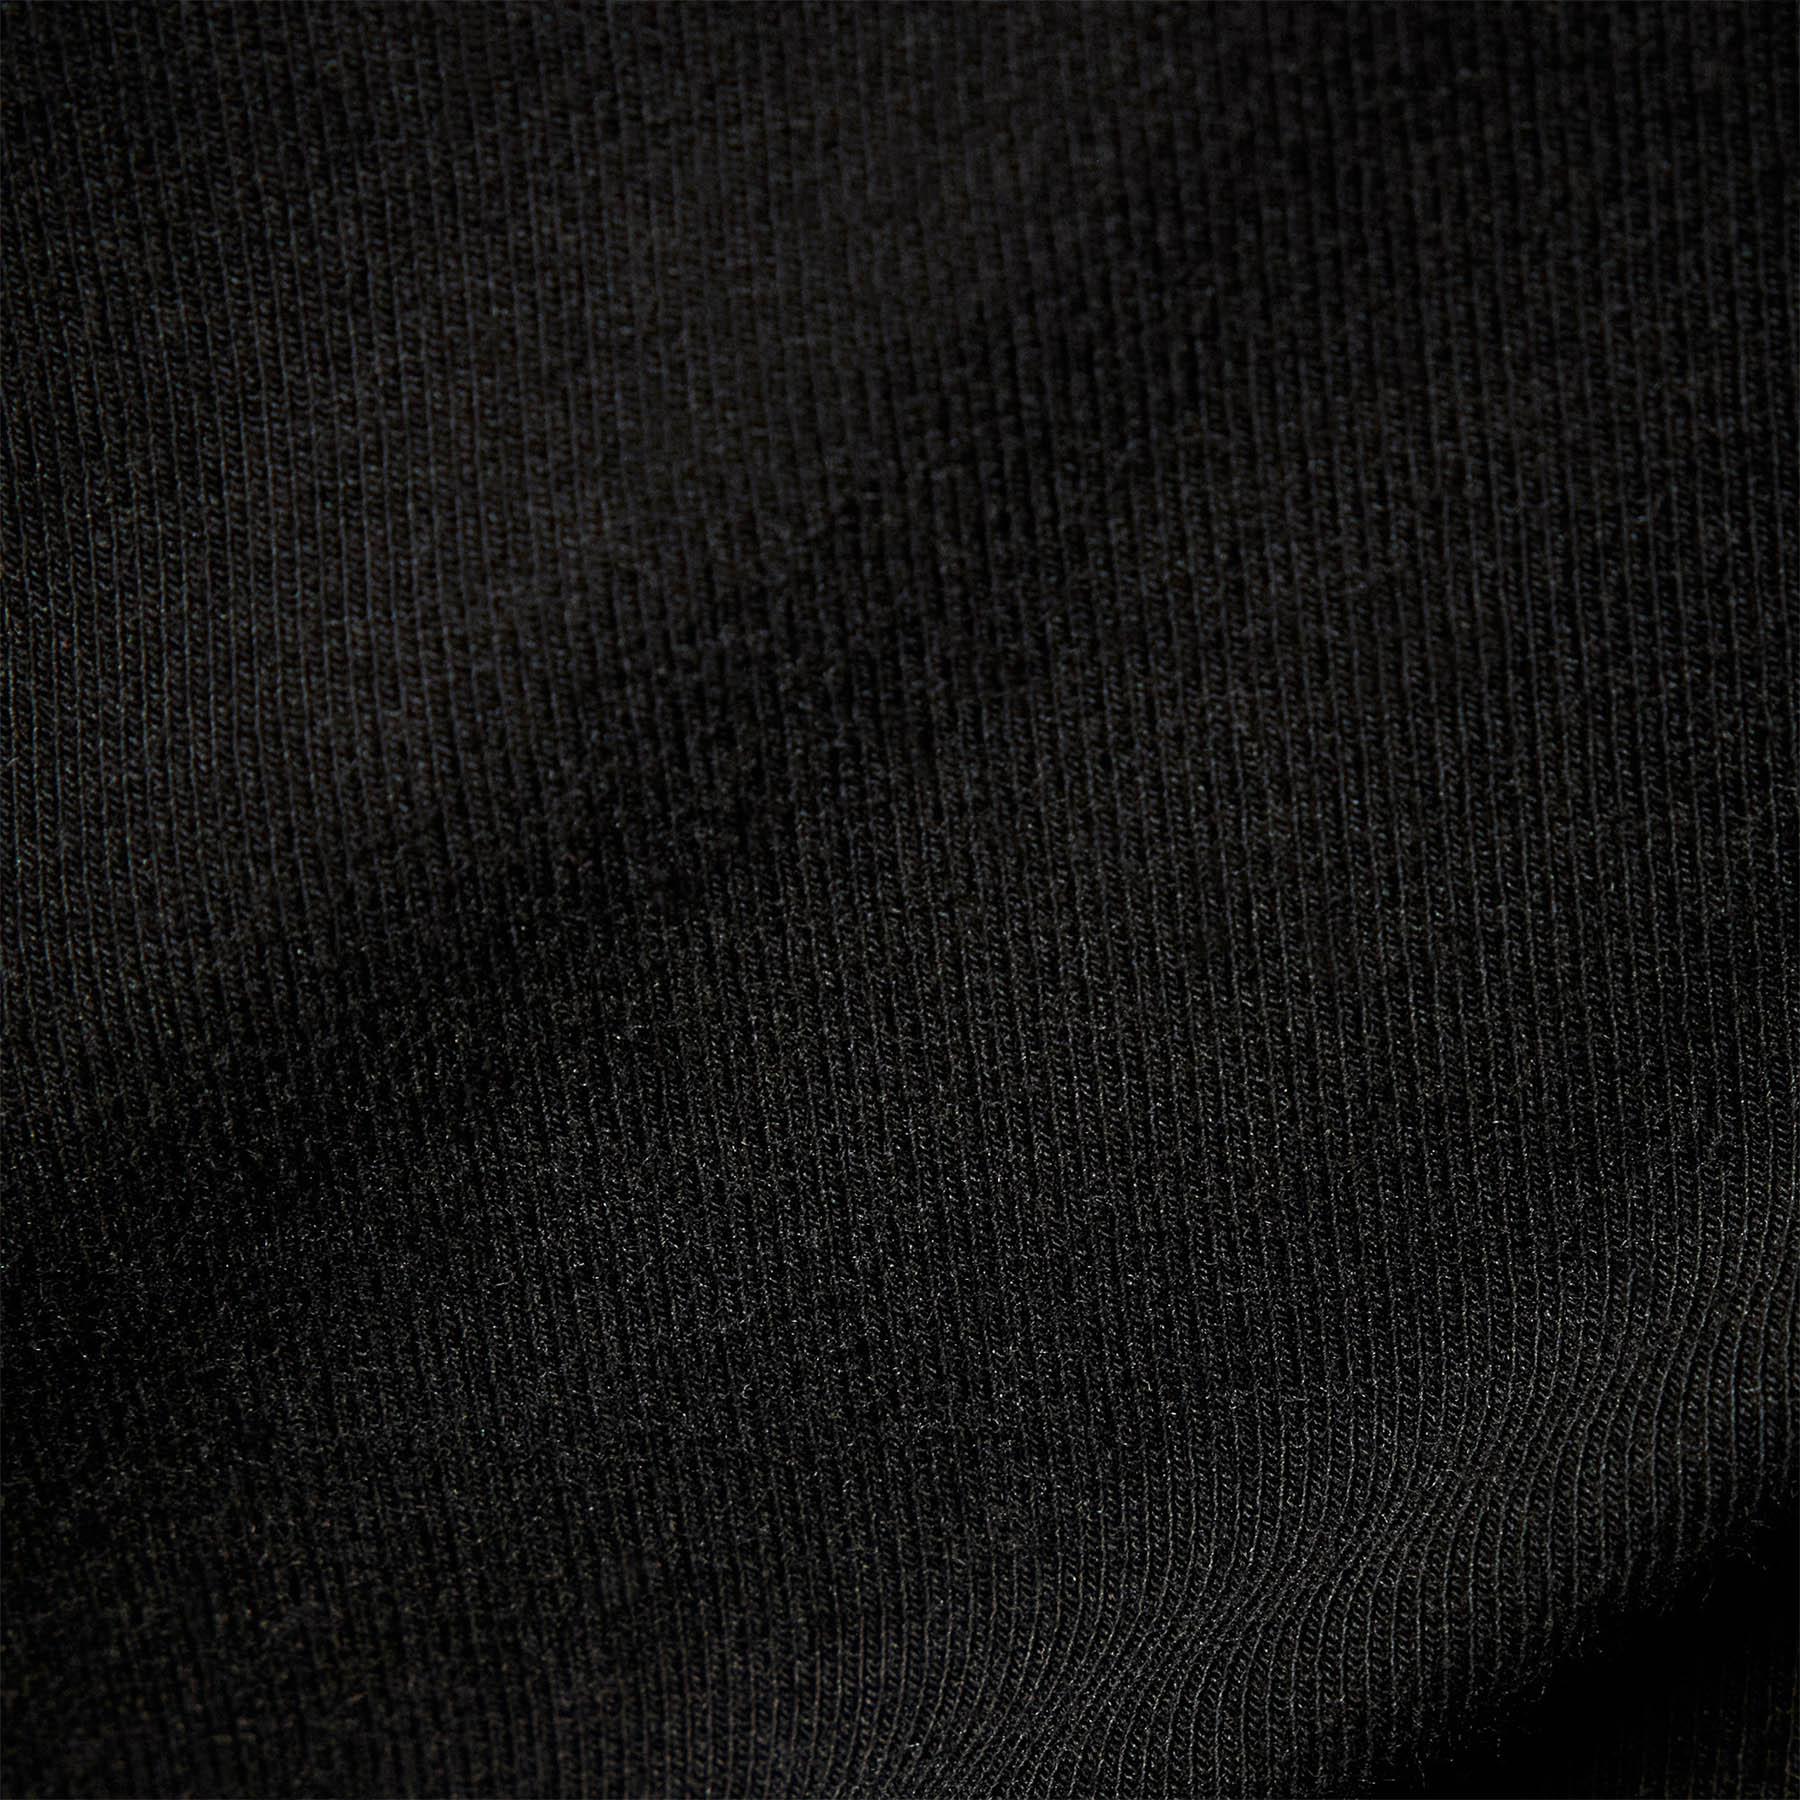 Black Greige Design 634 Cotton Laces at Rs 1500.00